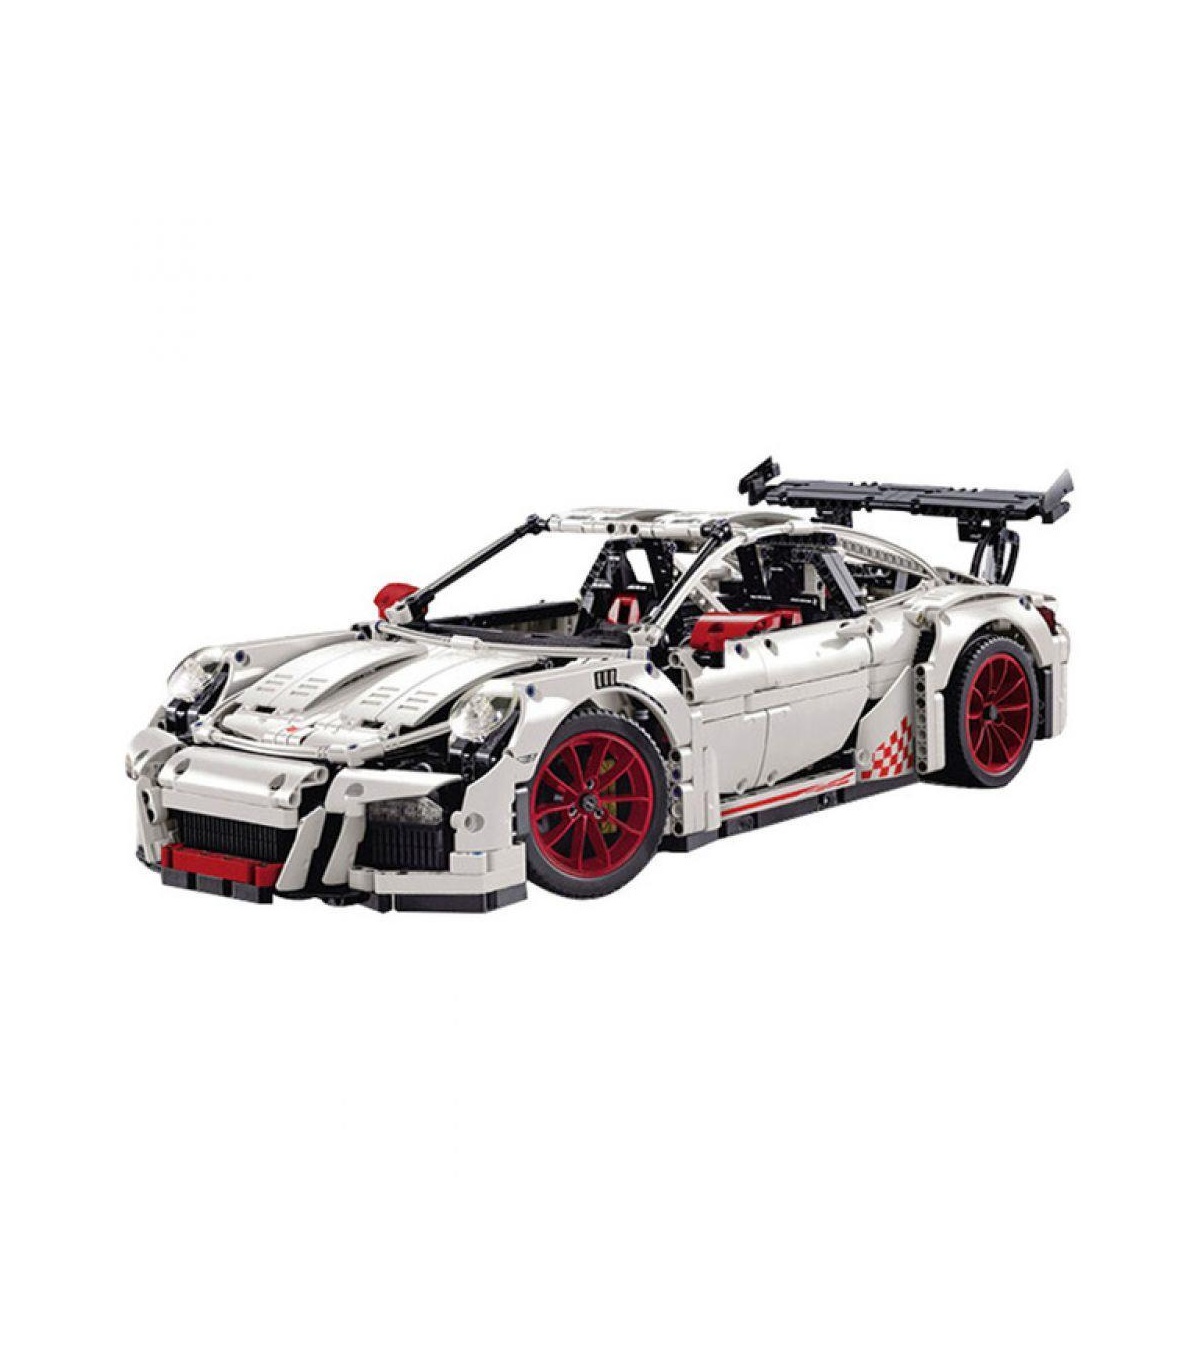 Benutzerdefinierte weiße Porsche 911 GT3 RS Technik Bausteine Spielzeug Set